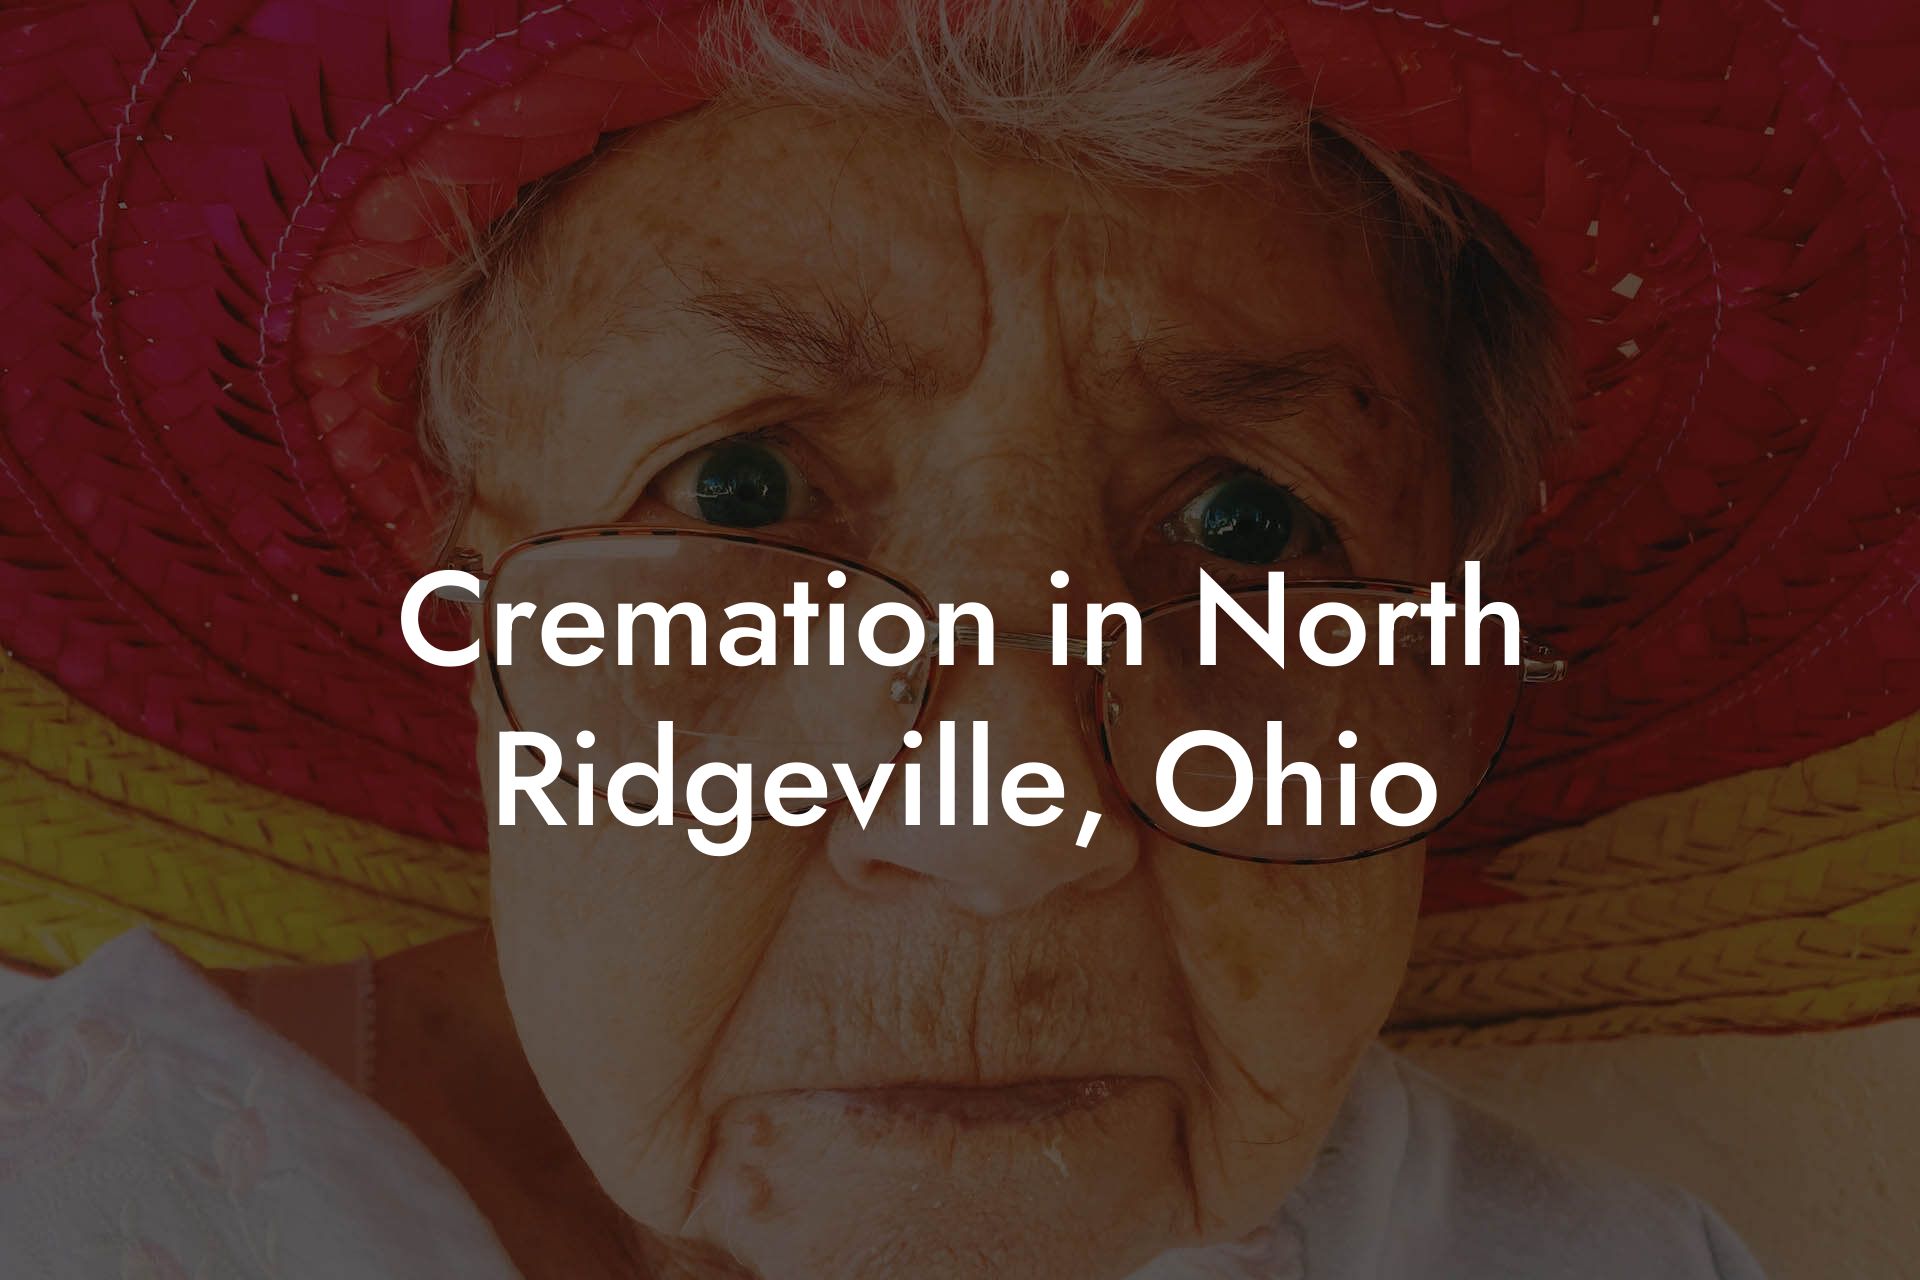 Cremation in North Ridgeville, Ohio